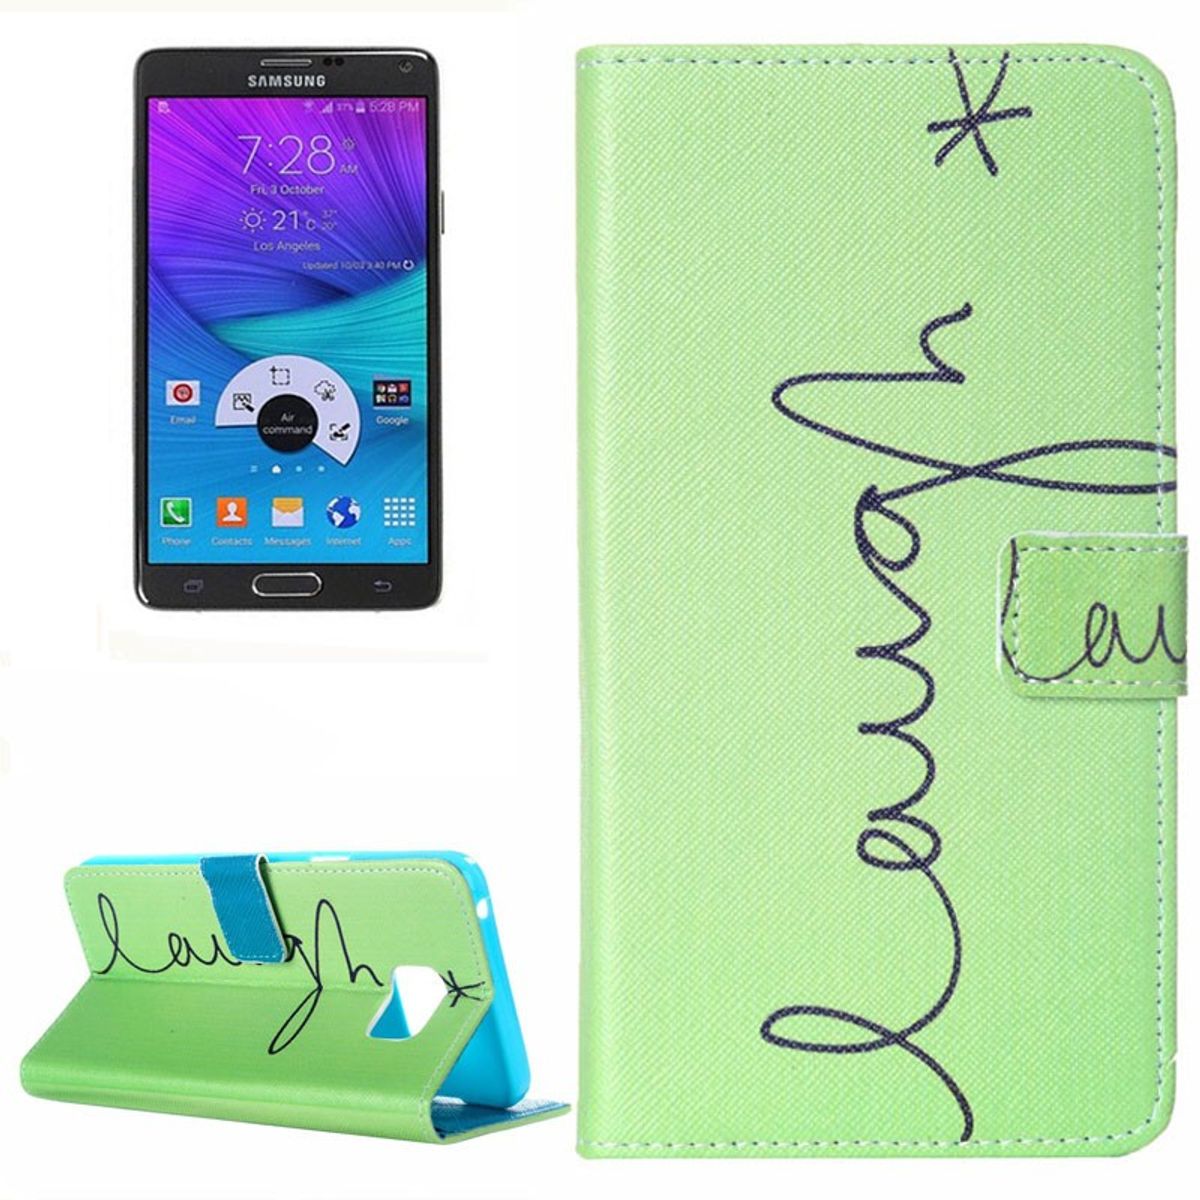 König Funda para Samsung Galaxy Note 5, funda protectora, funda para teléfono móvil, funda con tapa, funda tipo cartera, piel sintética, color verde risa